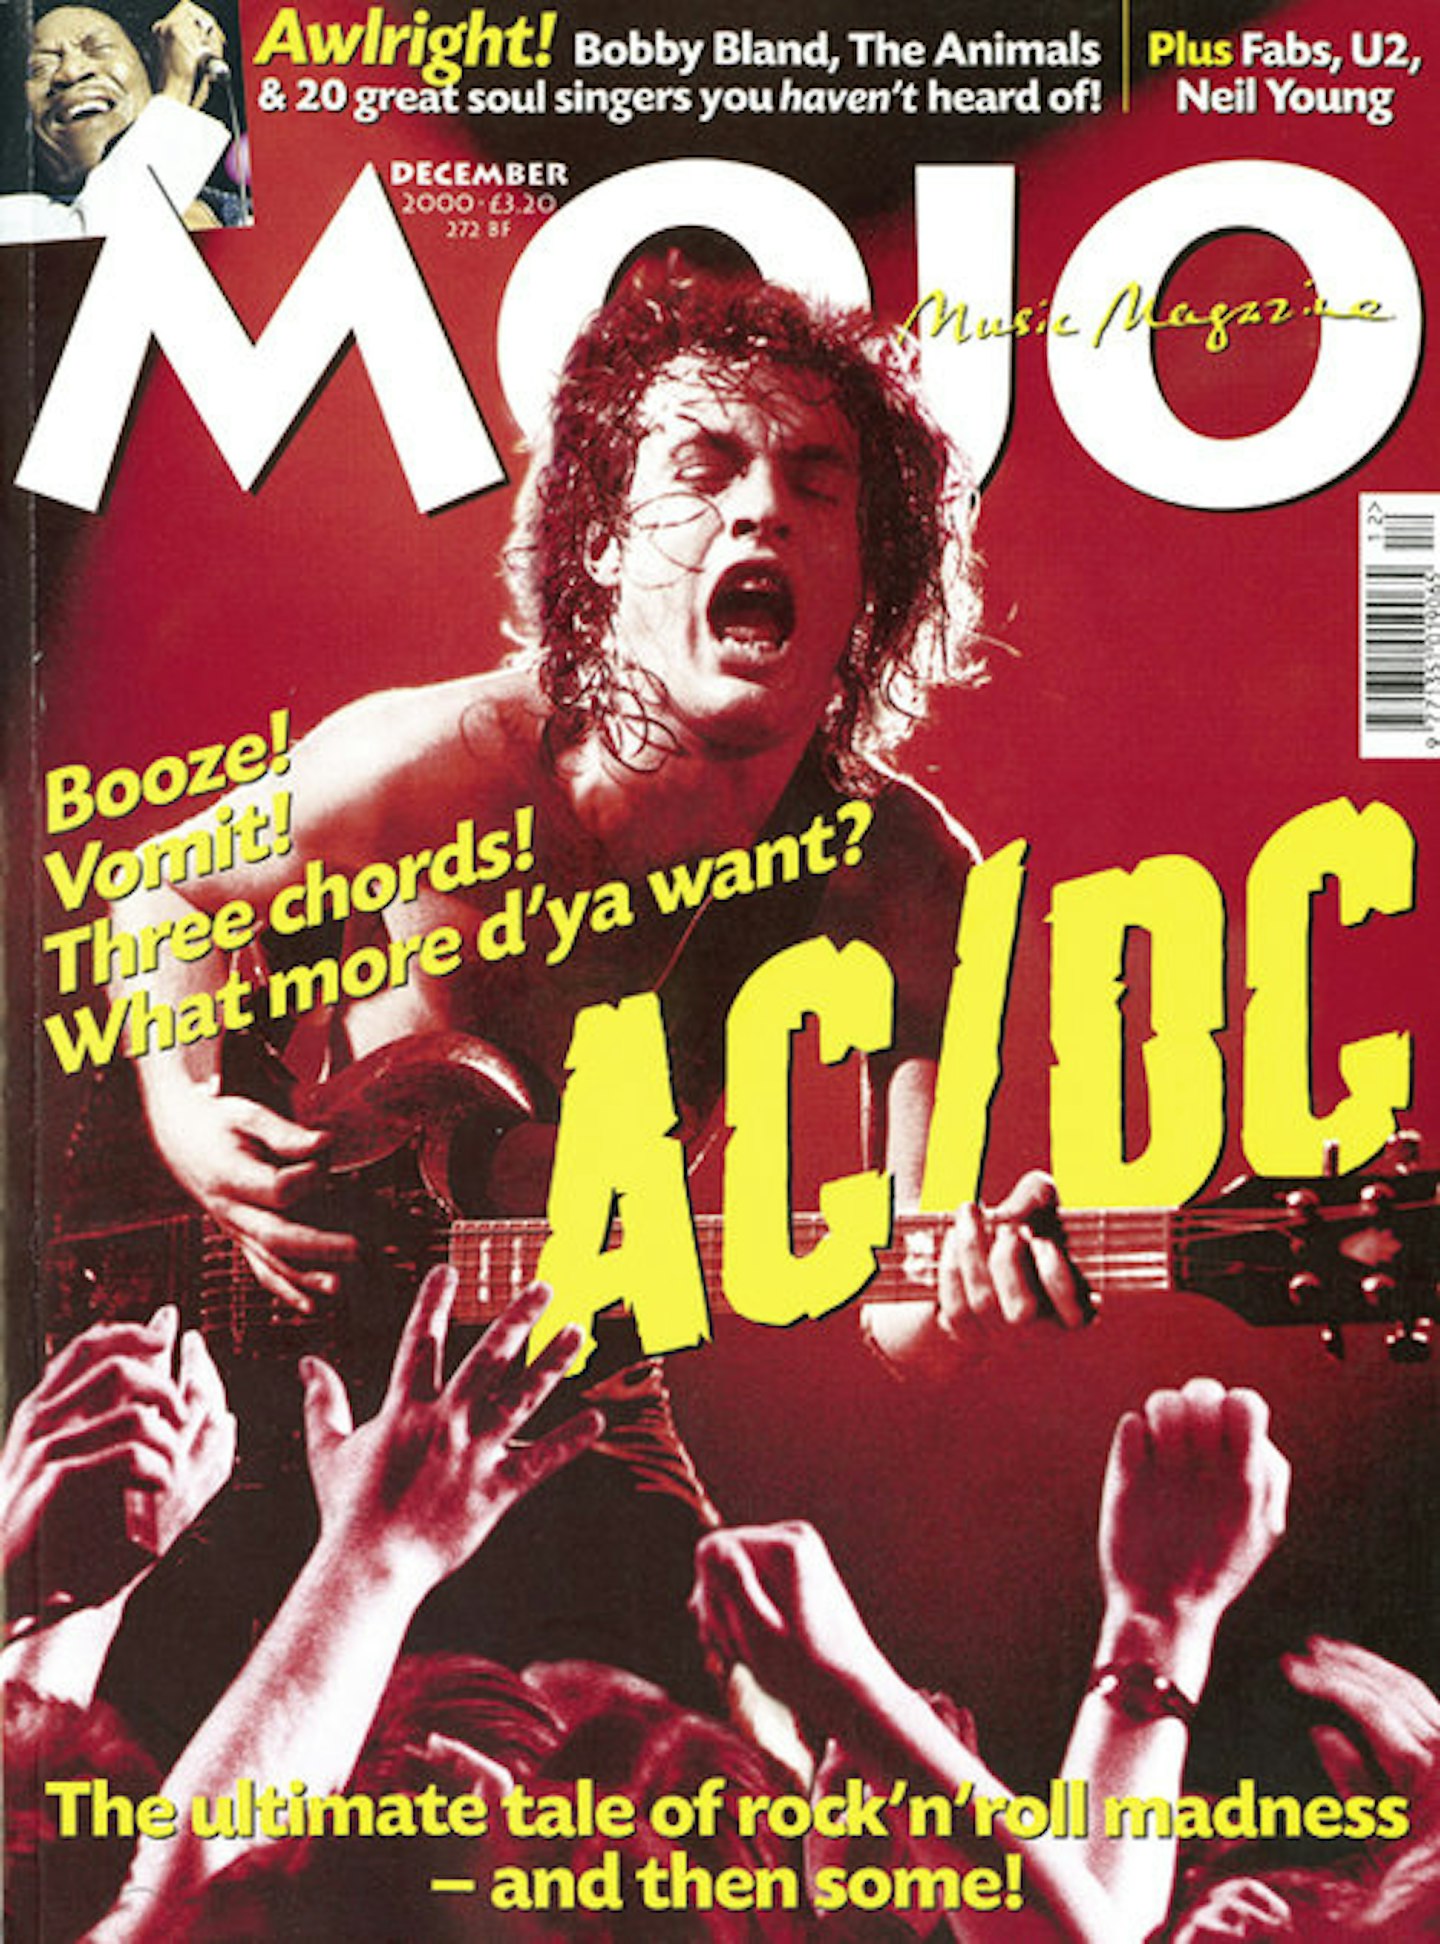 MOJO Issue 85 / December 2000